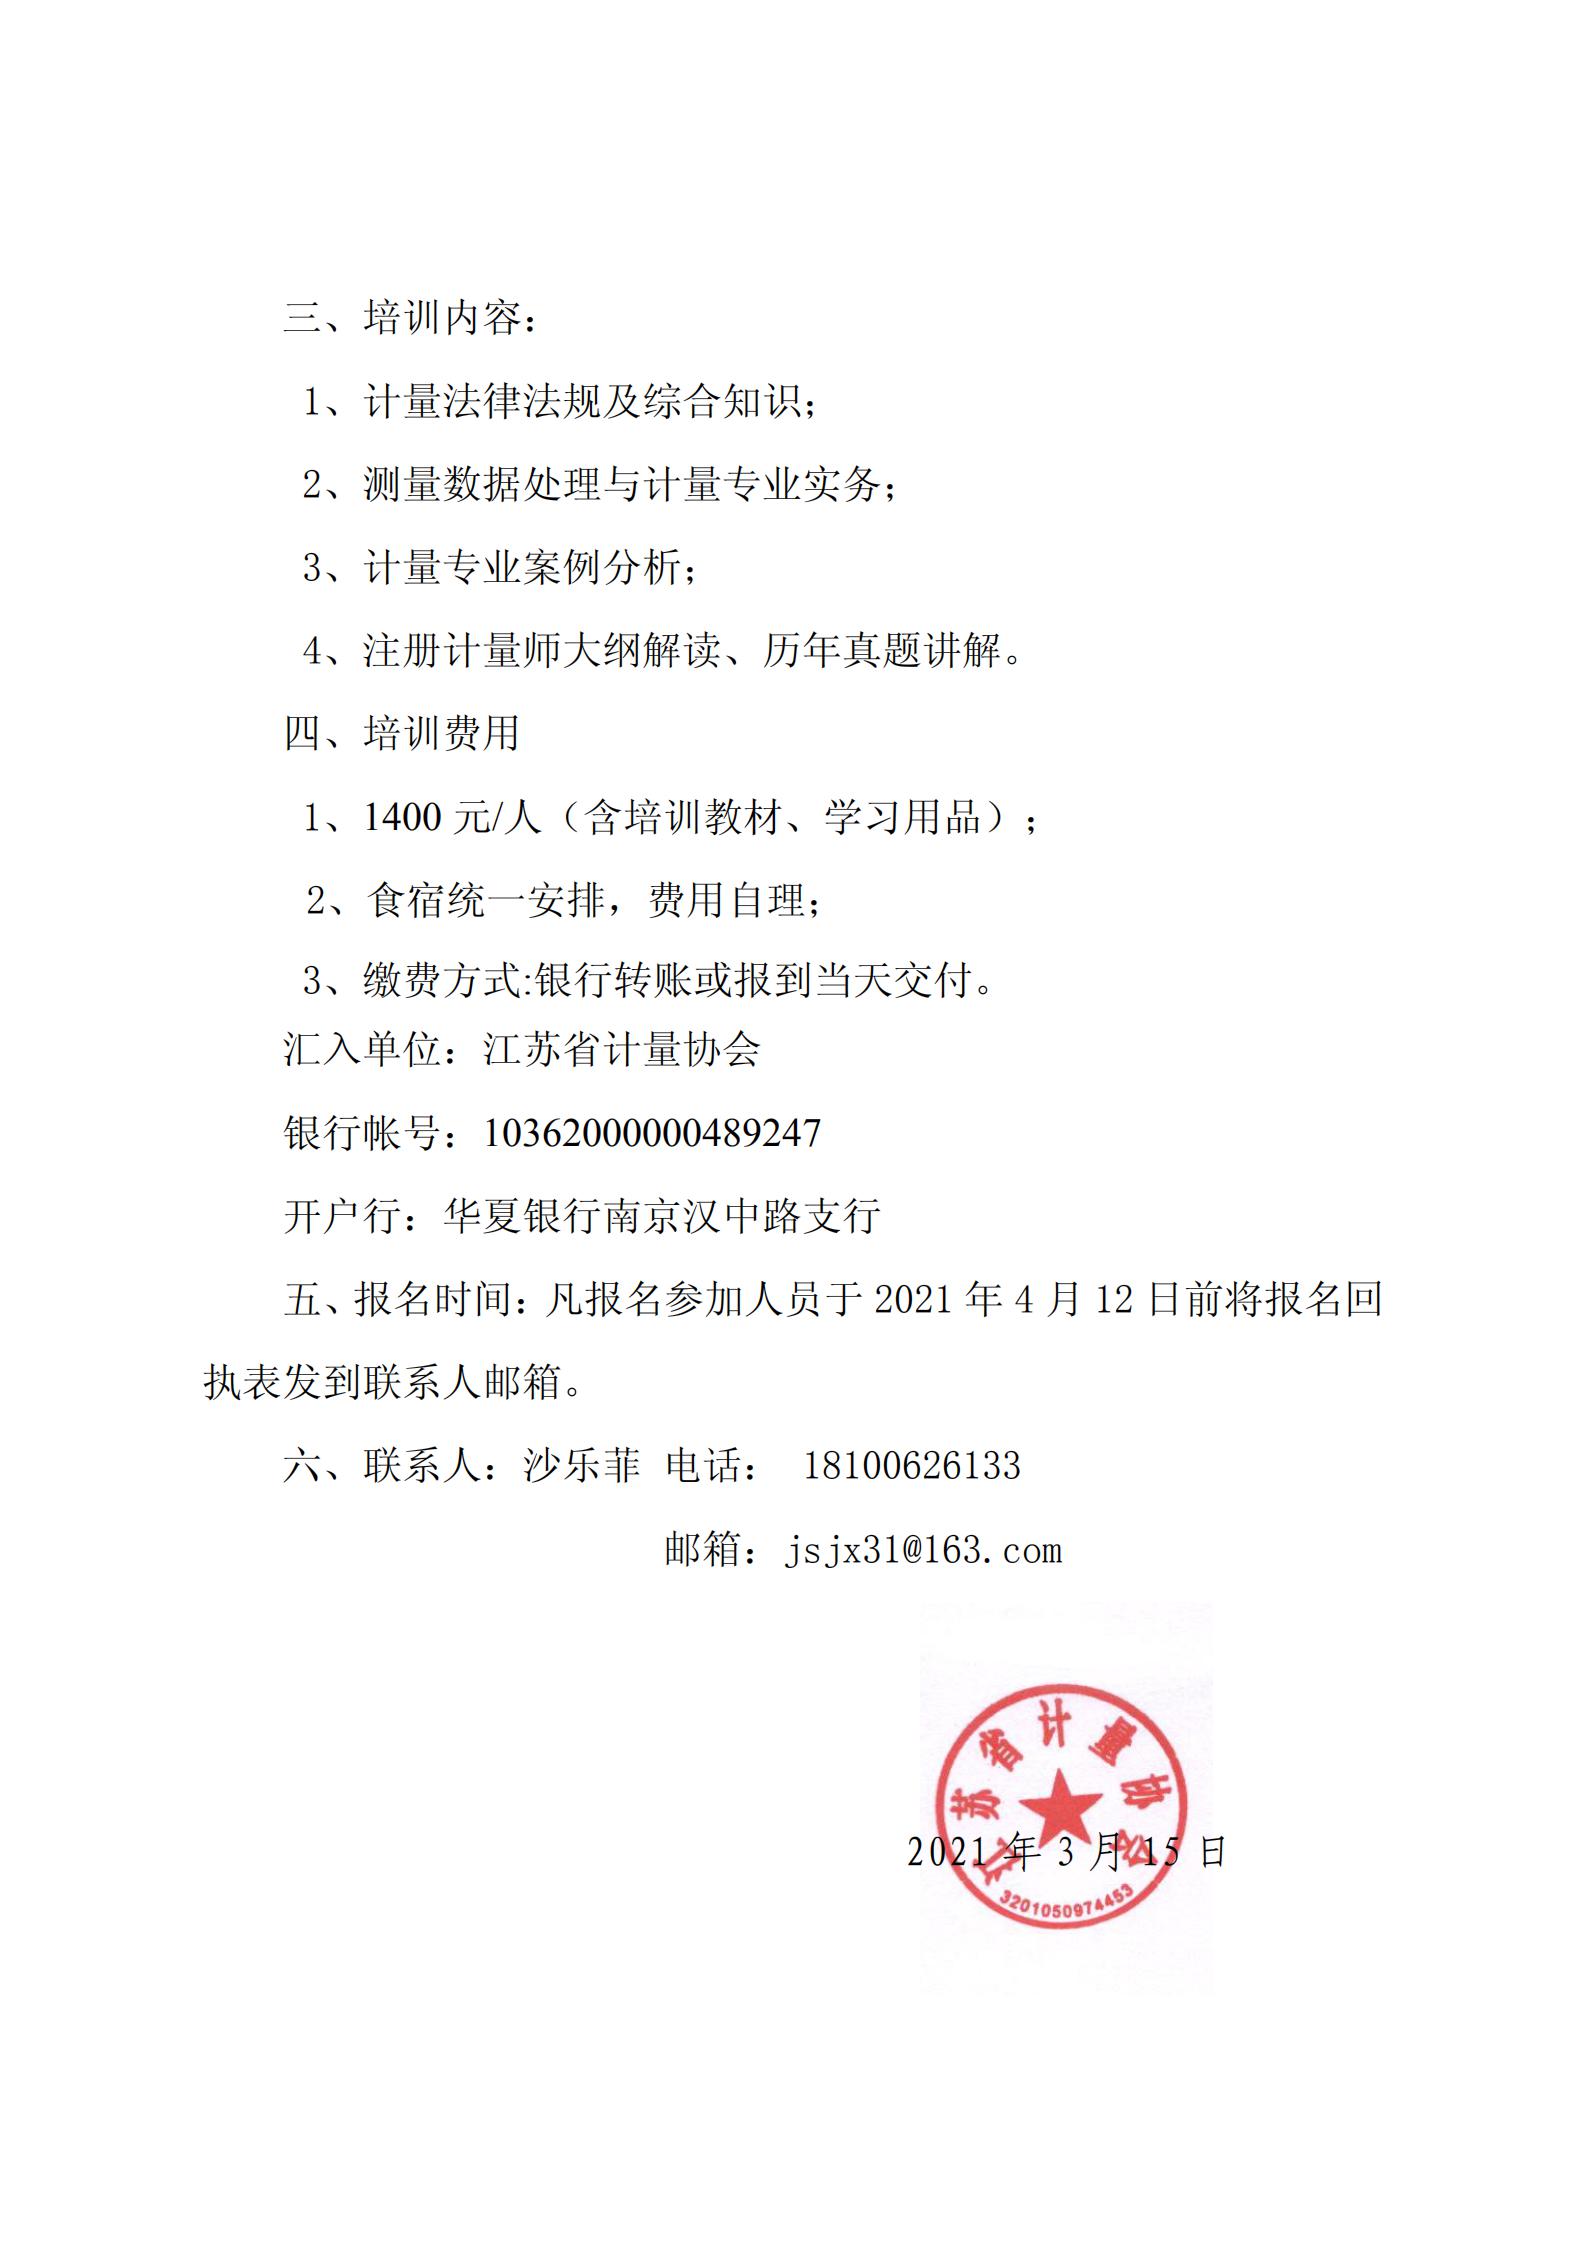 注册计量师考前辅导班的通知南京2021.3.15_01.jpg